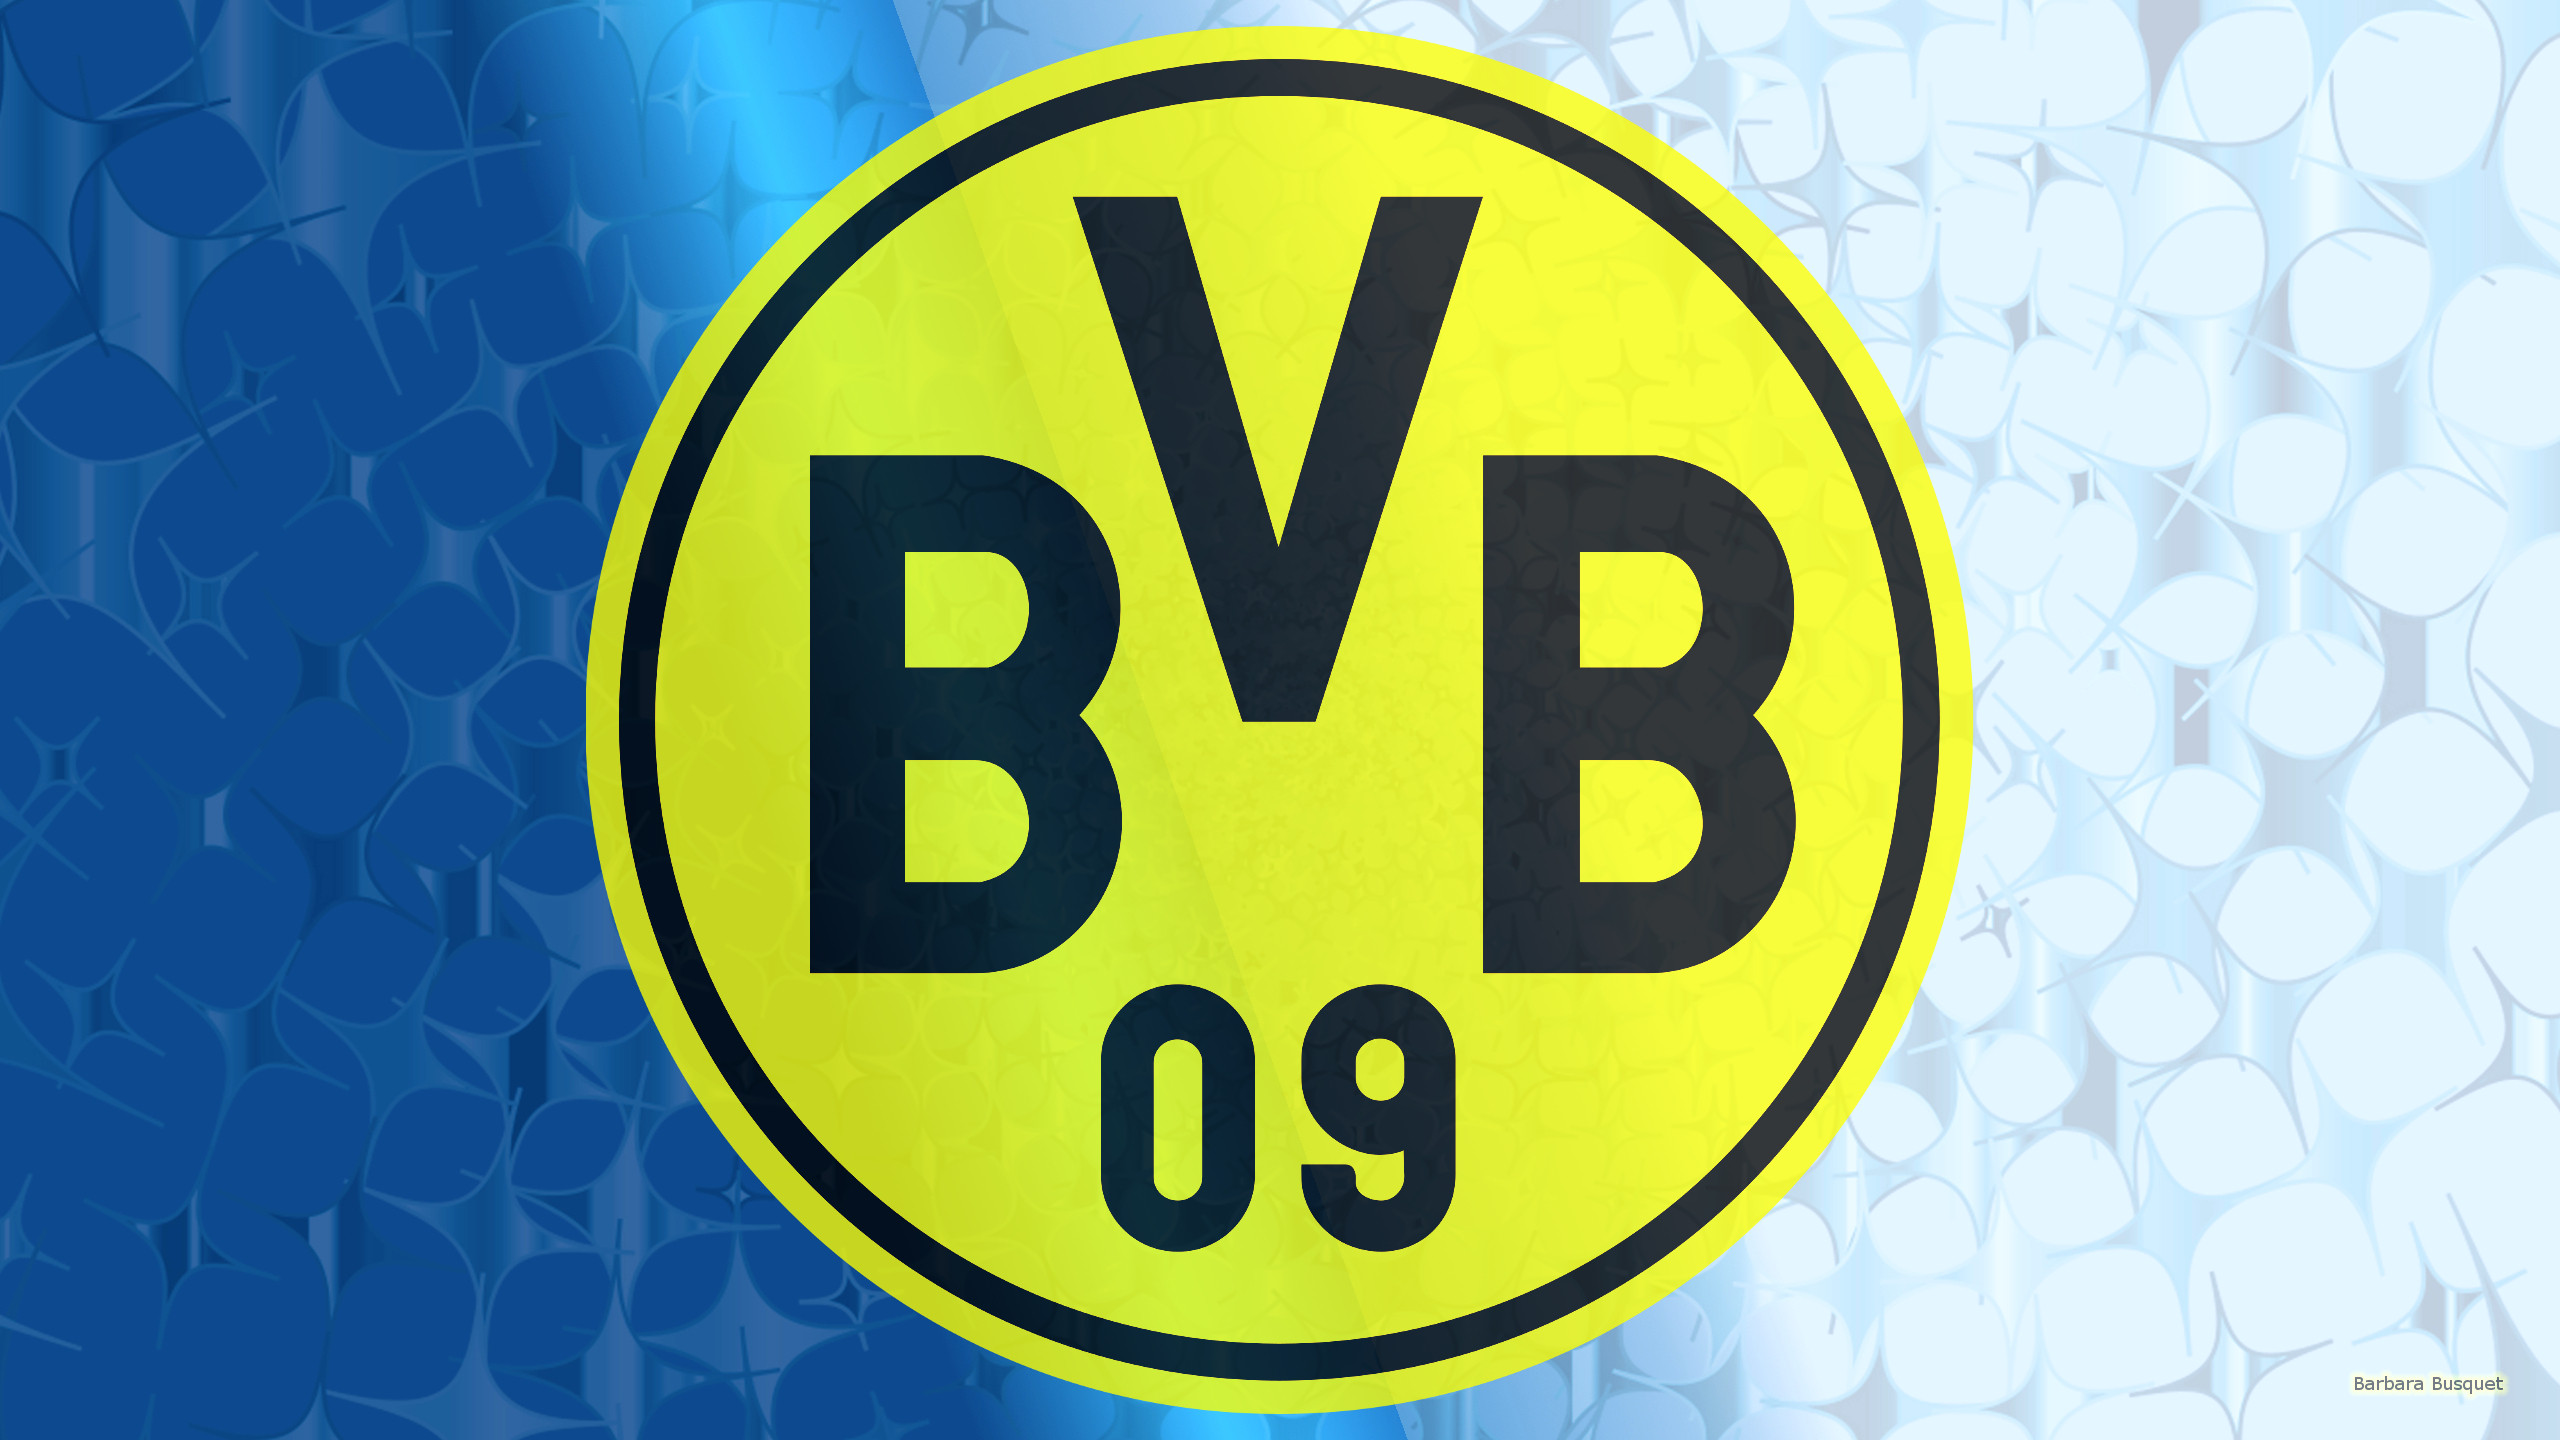 Download mobile wallpaper Sports, Logo, Emblem, Soccer, Bvb, Borussia Dortmund for free.